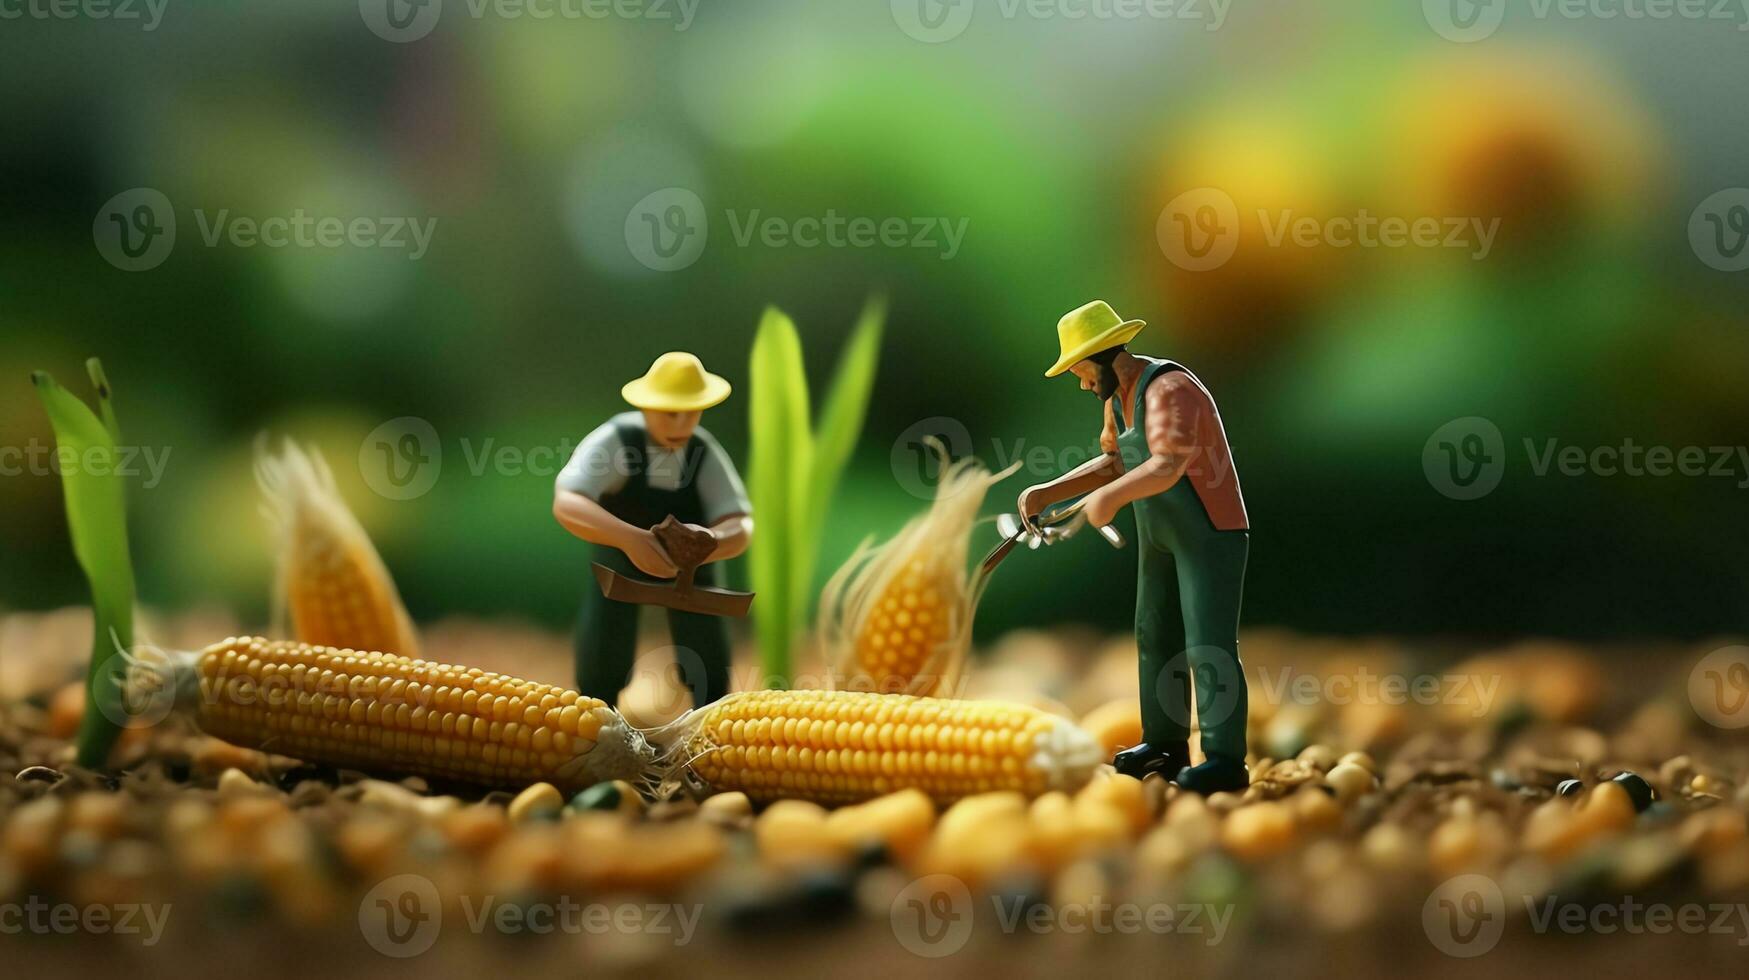 en miniatyr- arbetare arbetssätt på majs foto